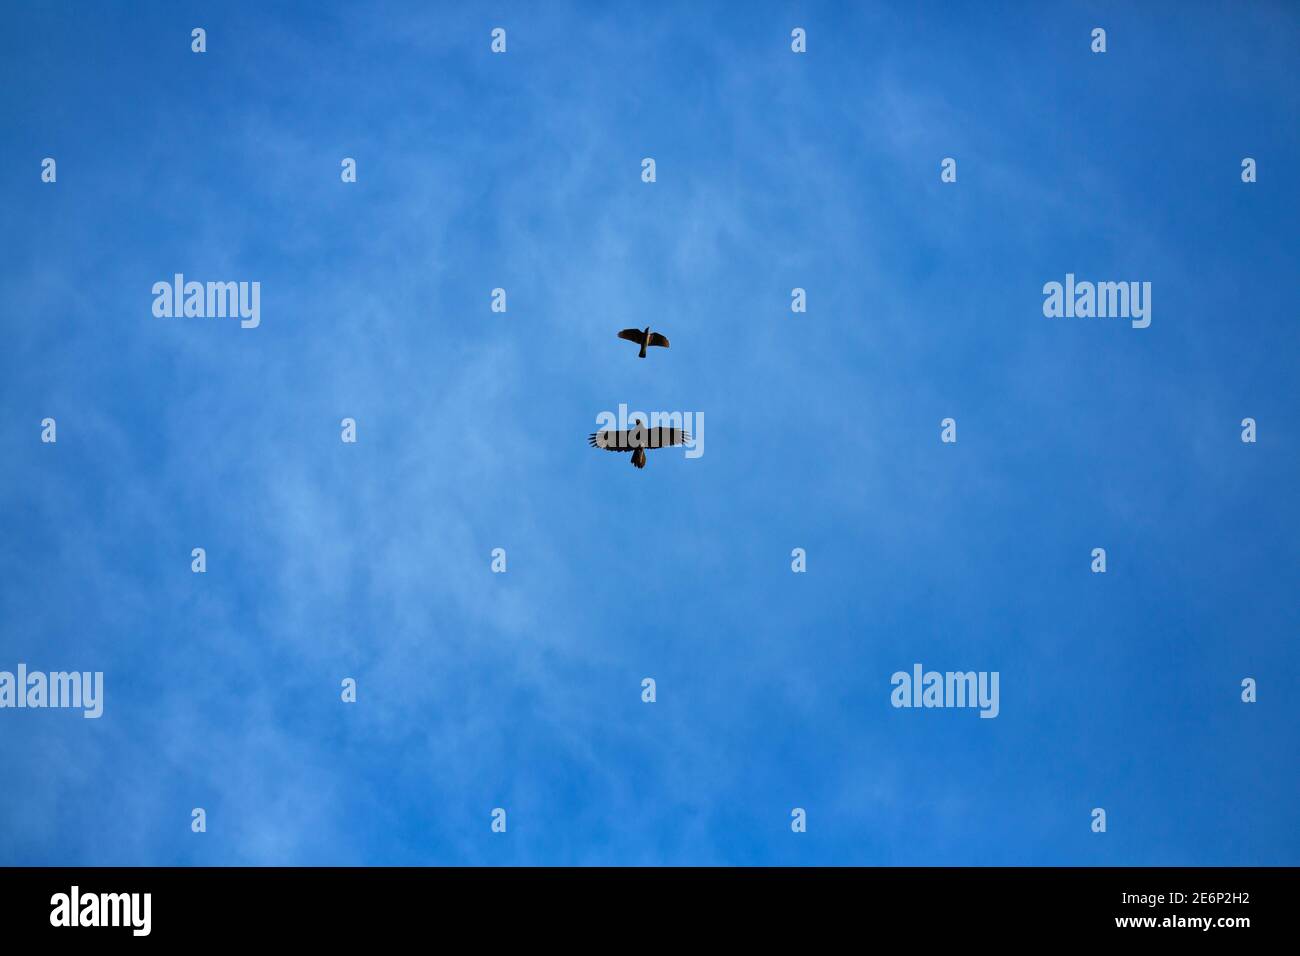 Un corbeau et une jaquette volant haut dans le ciel montrant différence de taille Banque D'Images